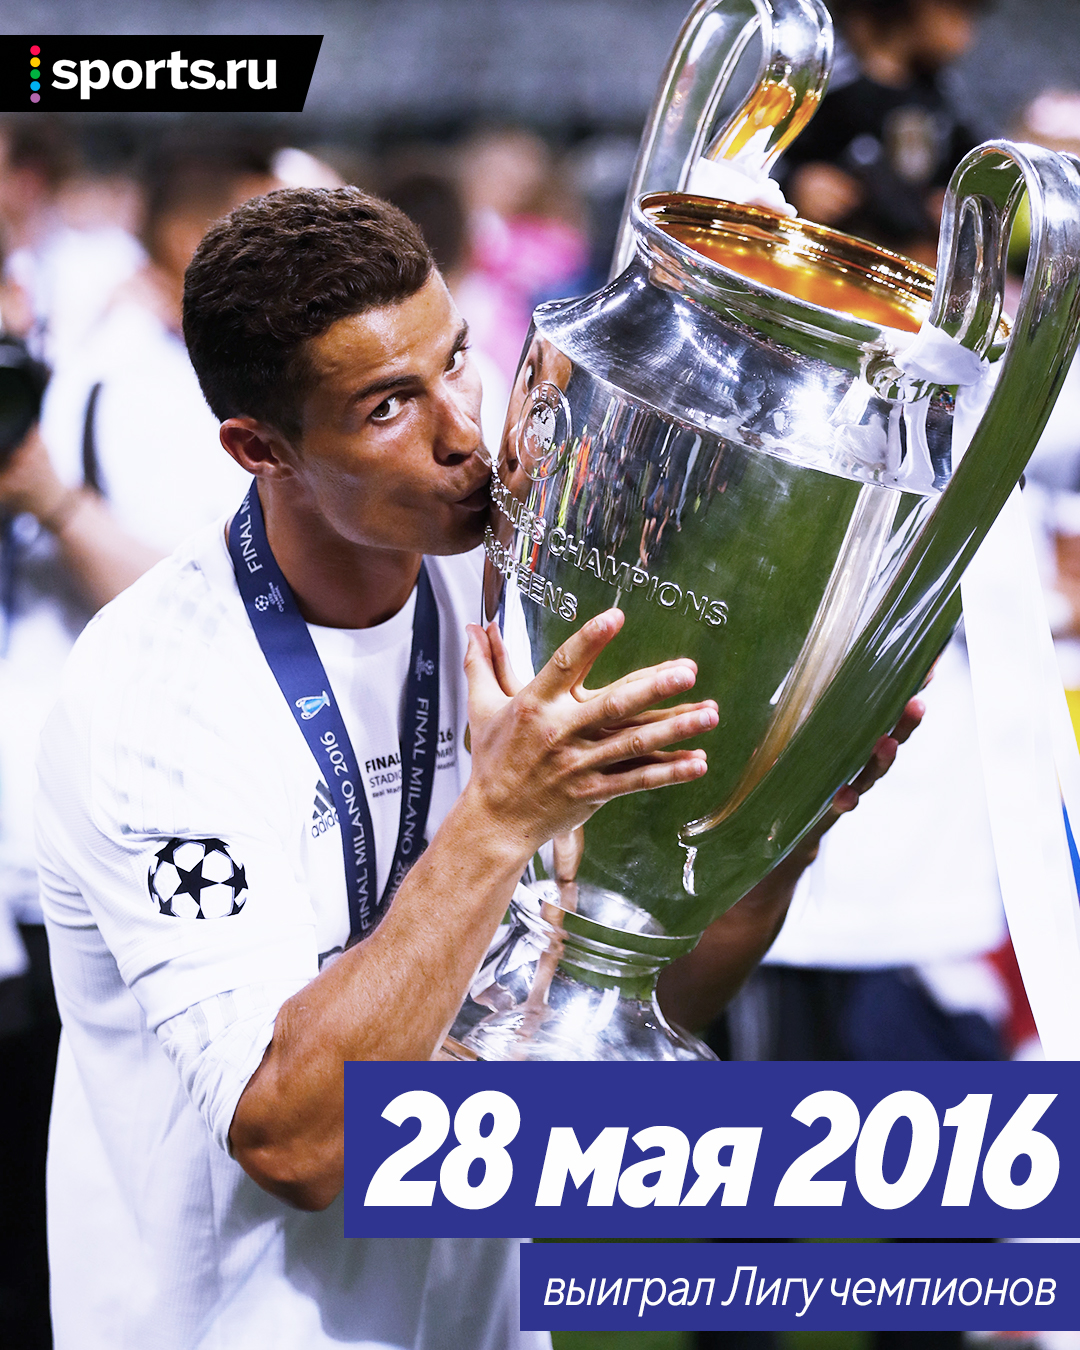 Лучший год в карьере Роналду: ЛЧ, Евро, Ла Лига, «Золотой мяч», FIFA The Best и еще четыре трофея – уложился за 372 дня